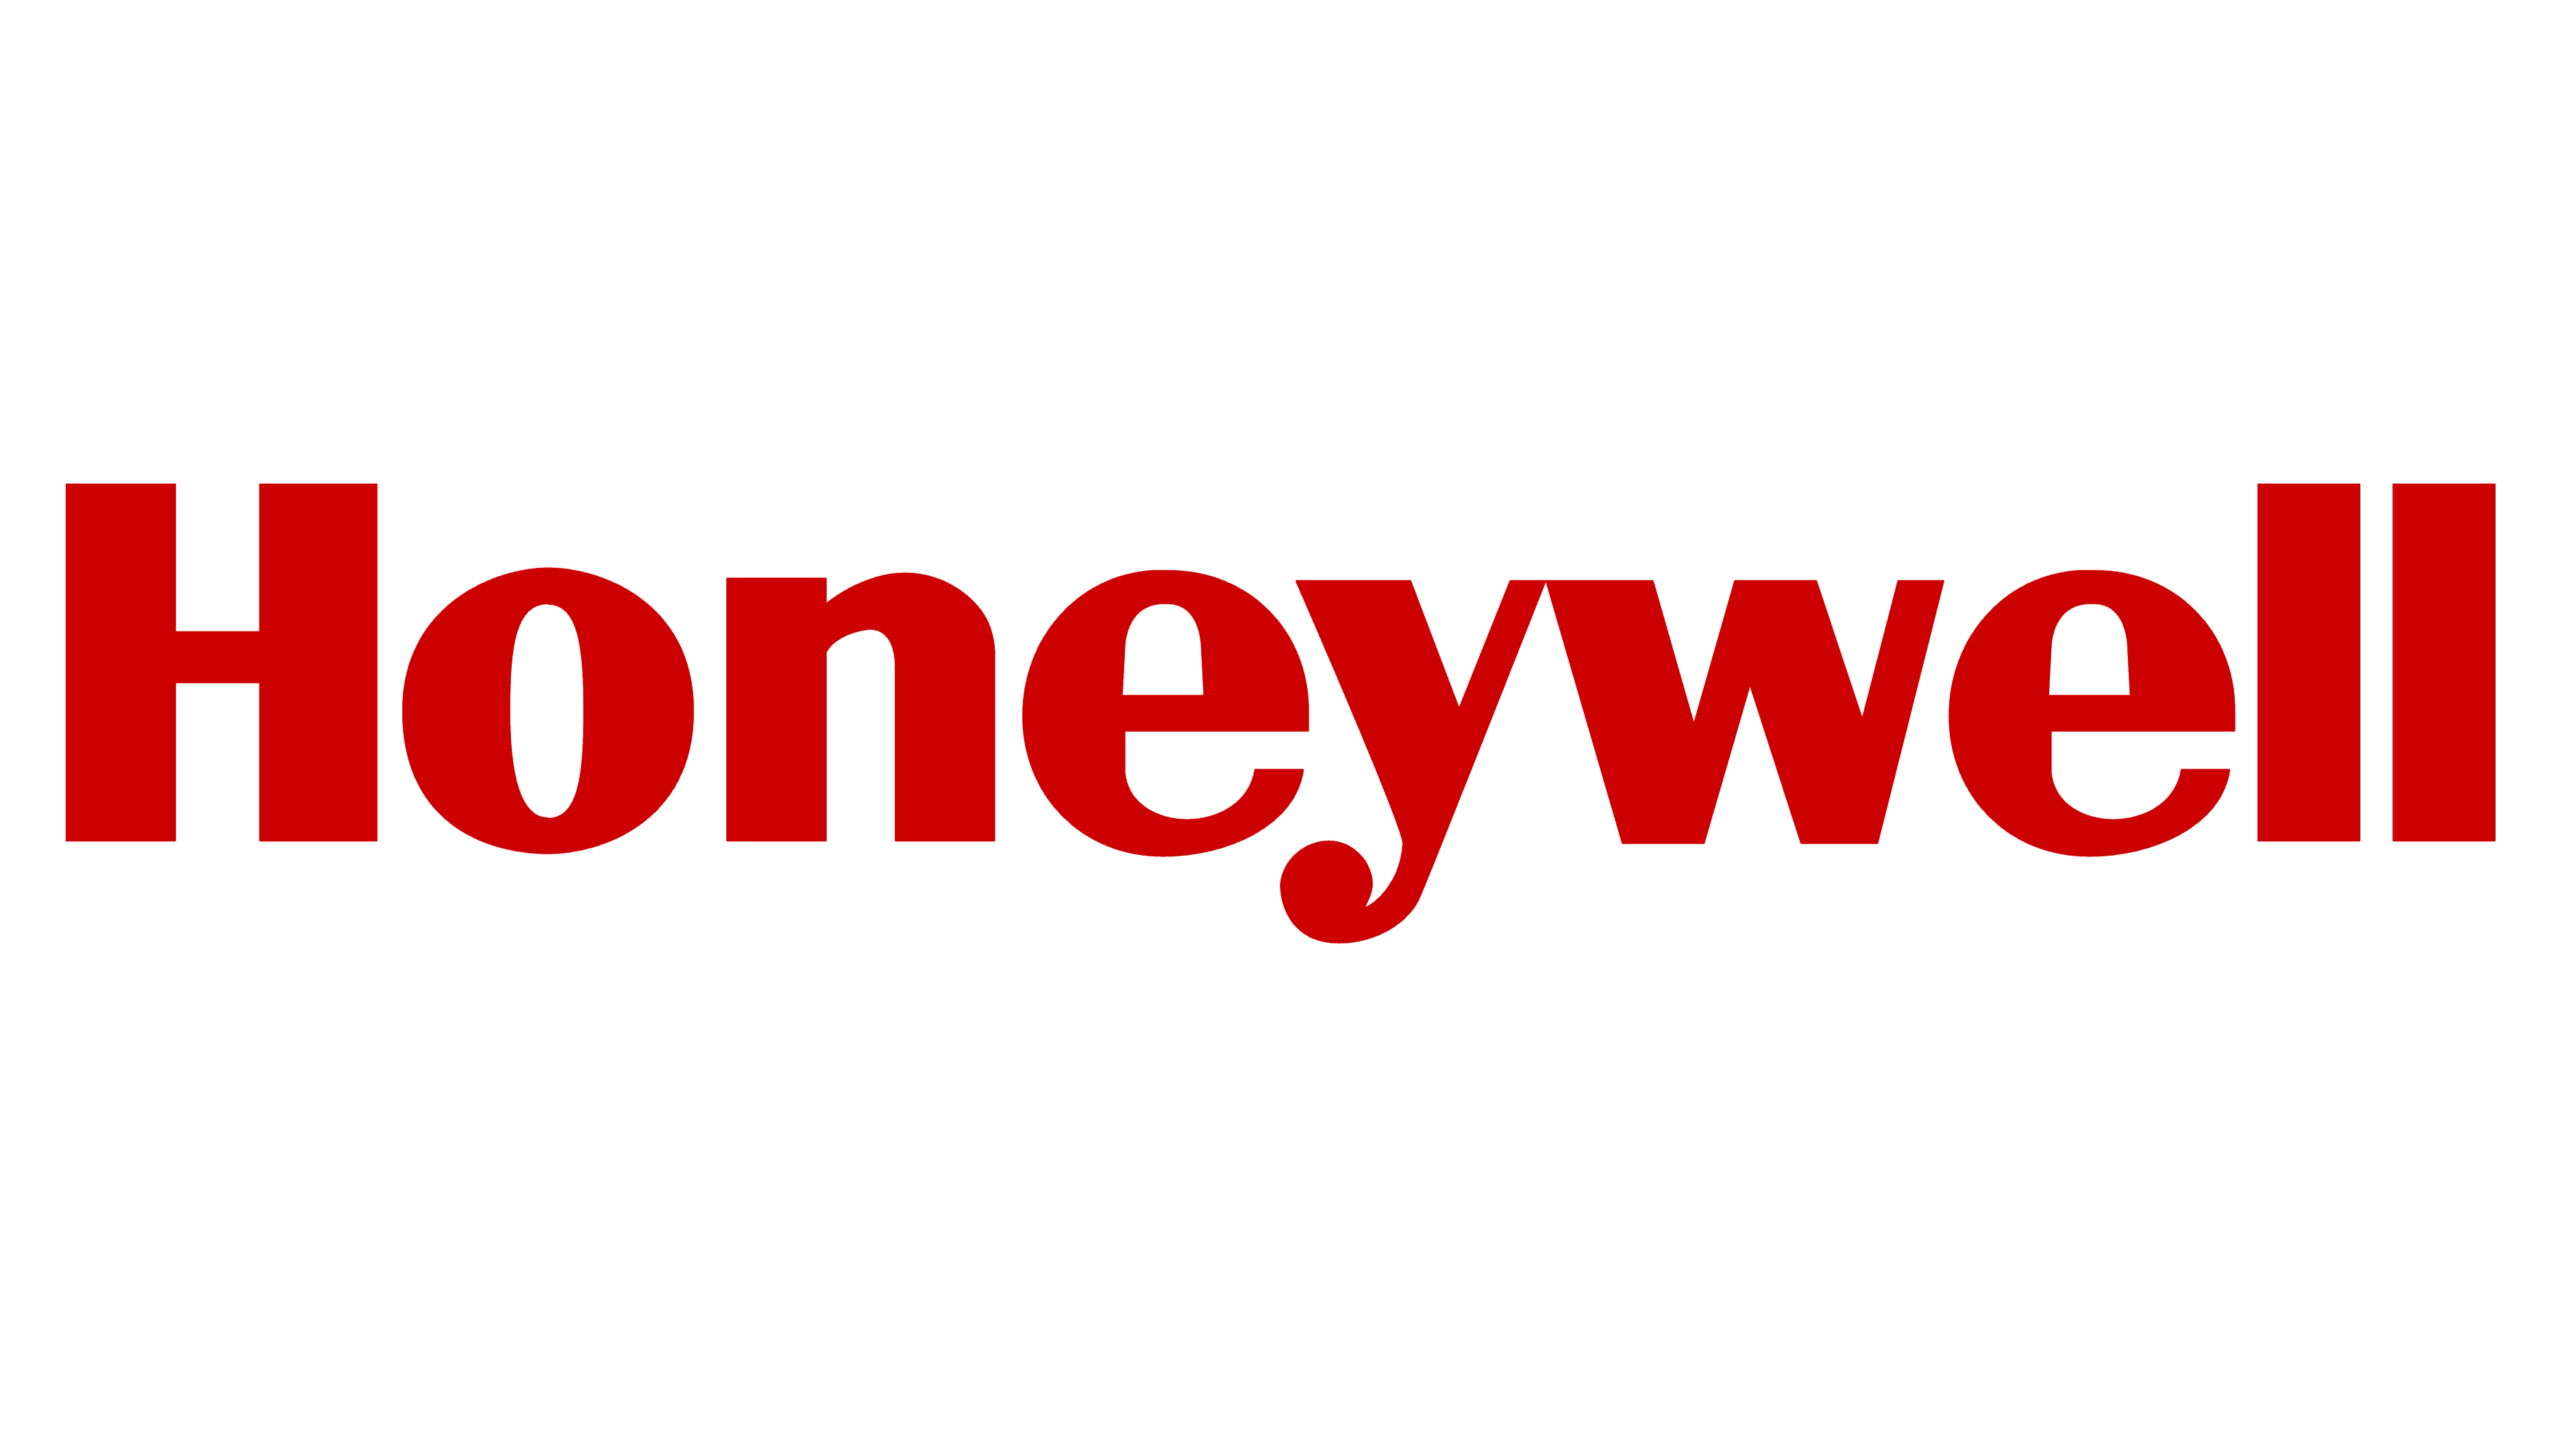 Honeywell integration